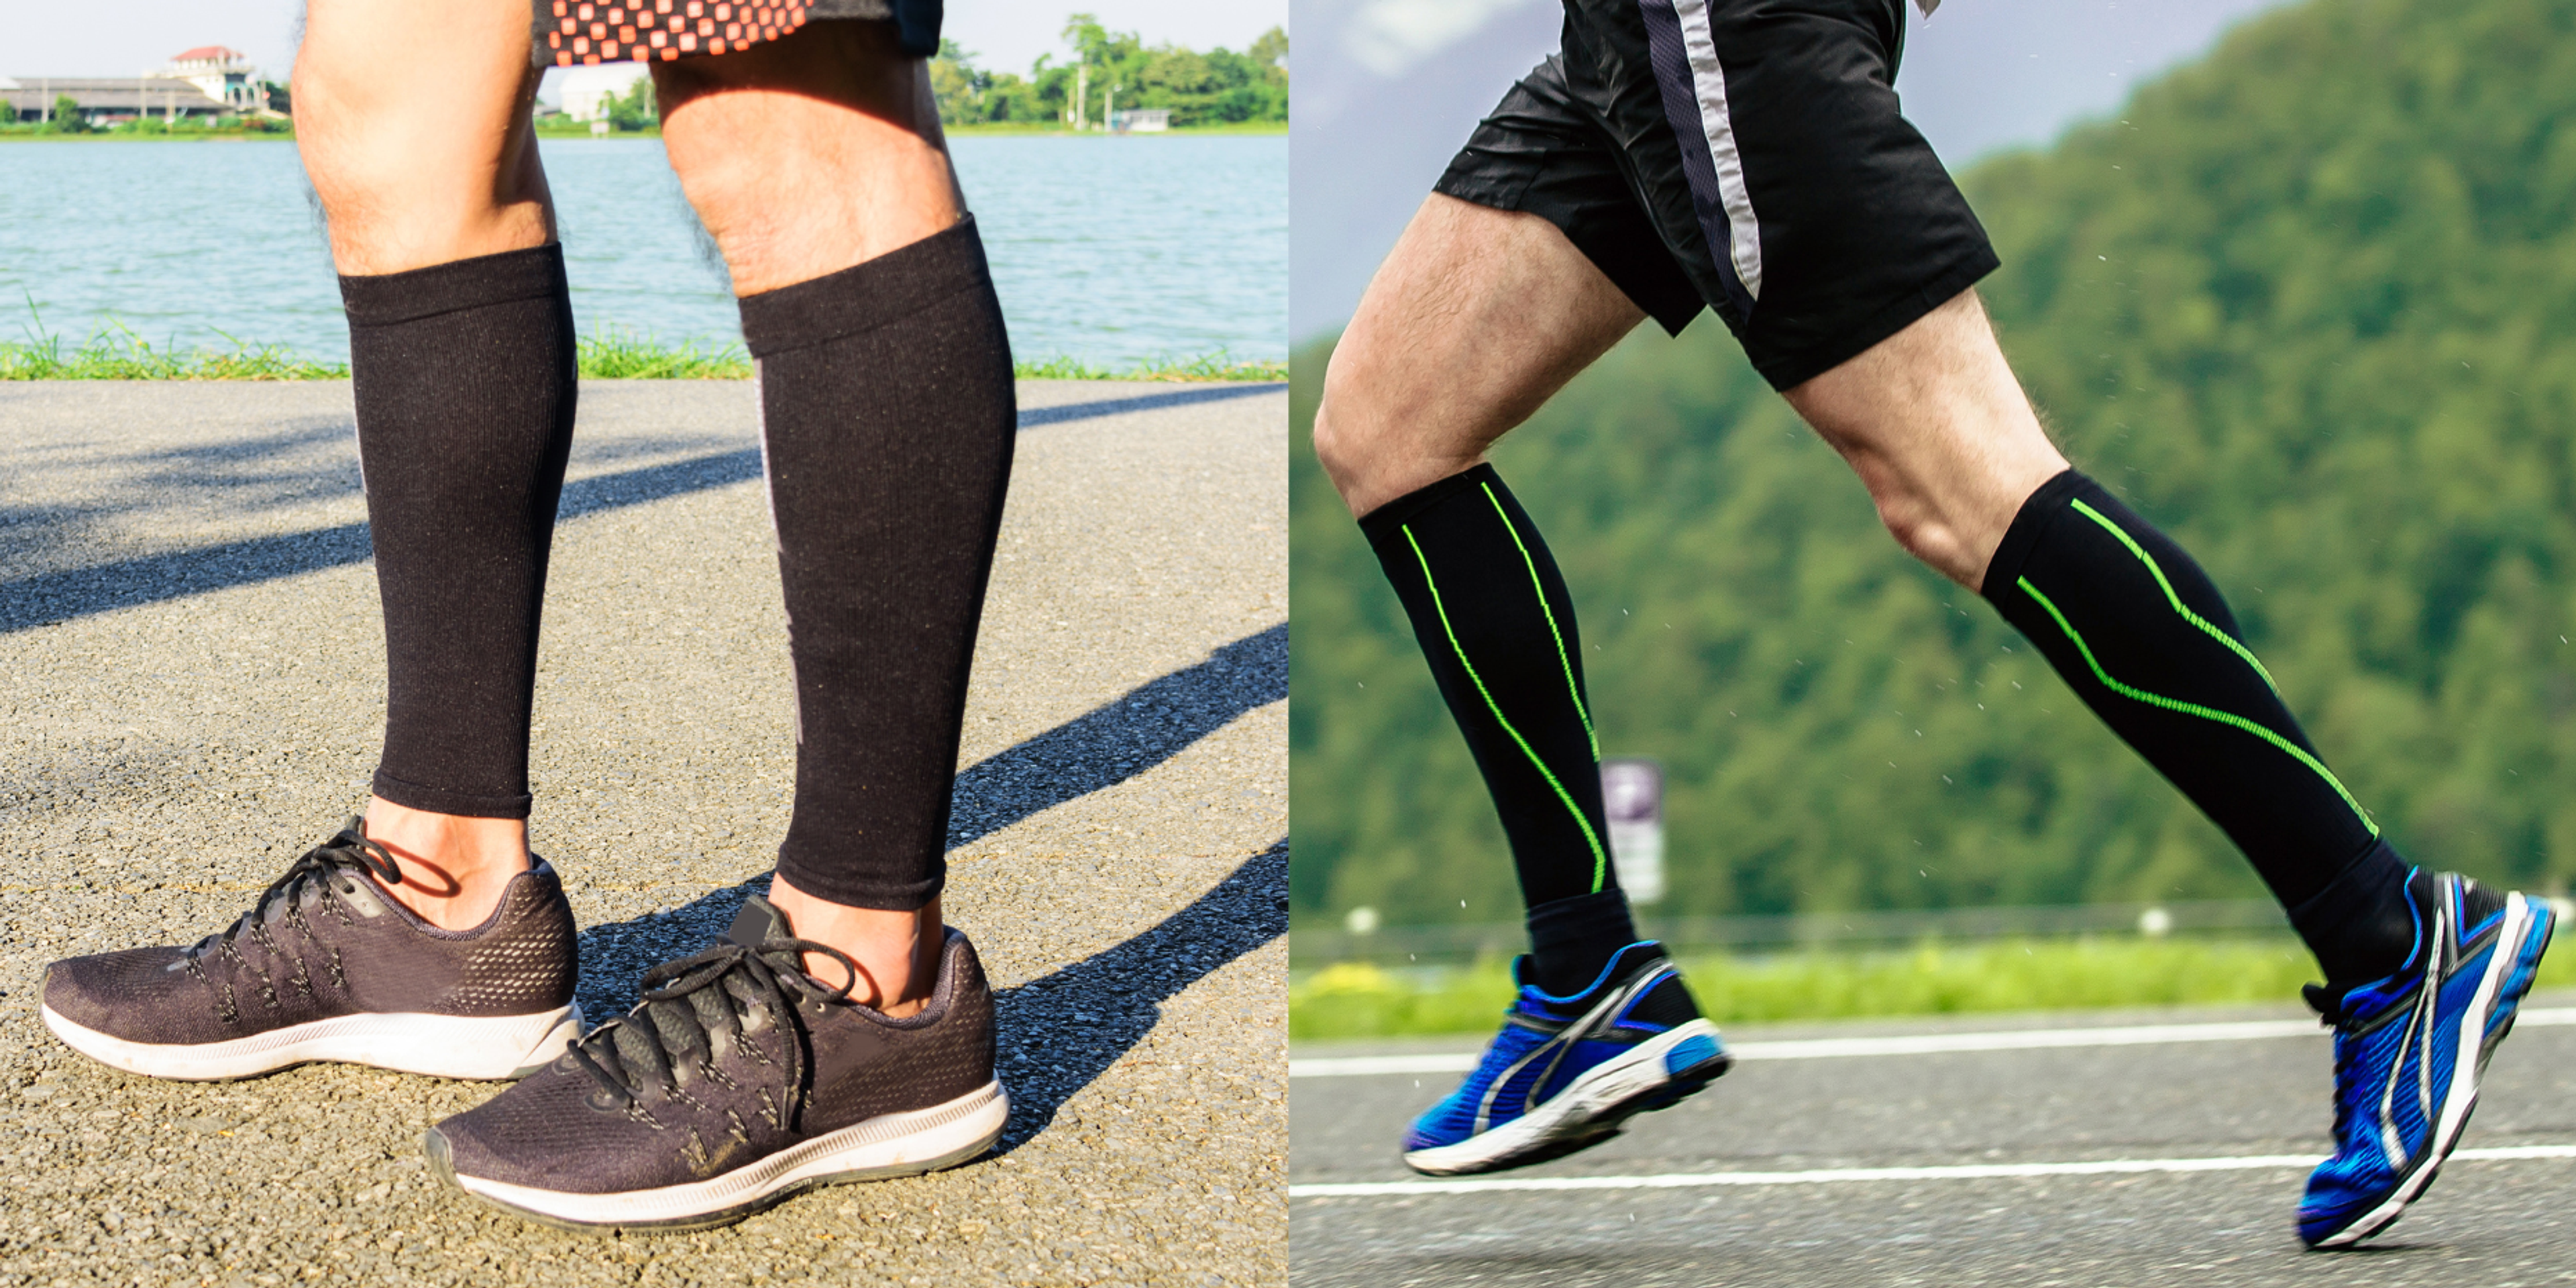 Chaussettes de compression sport: fonctionnent-elles vraiment?